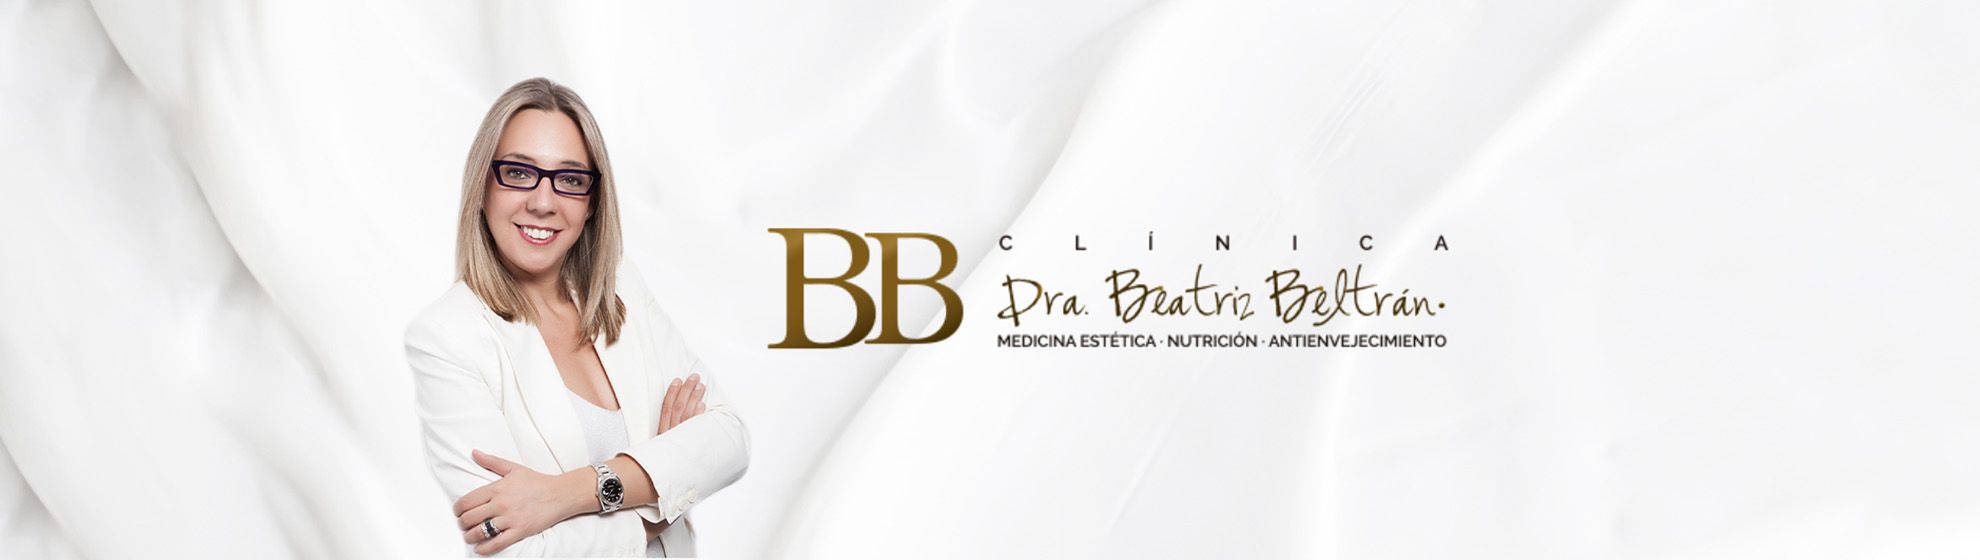 Dra. Beatriz Beltrán